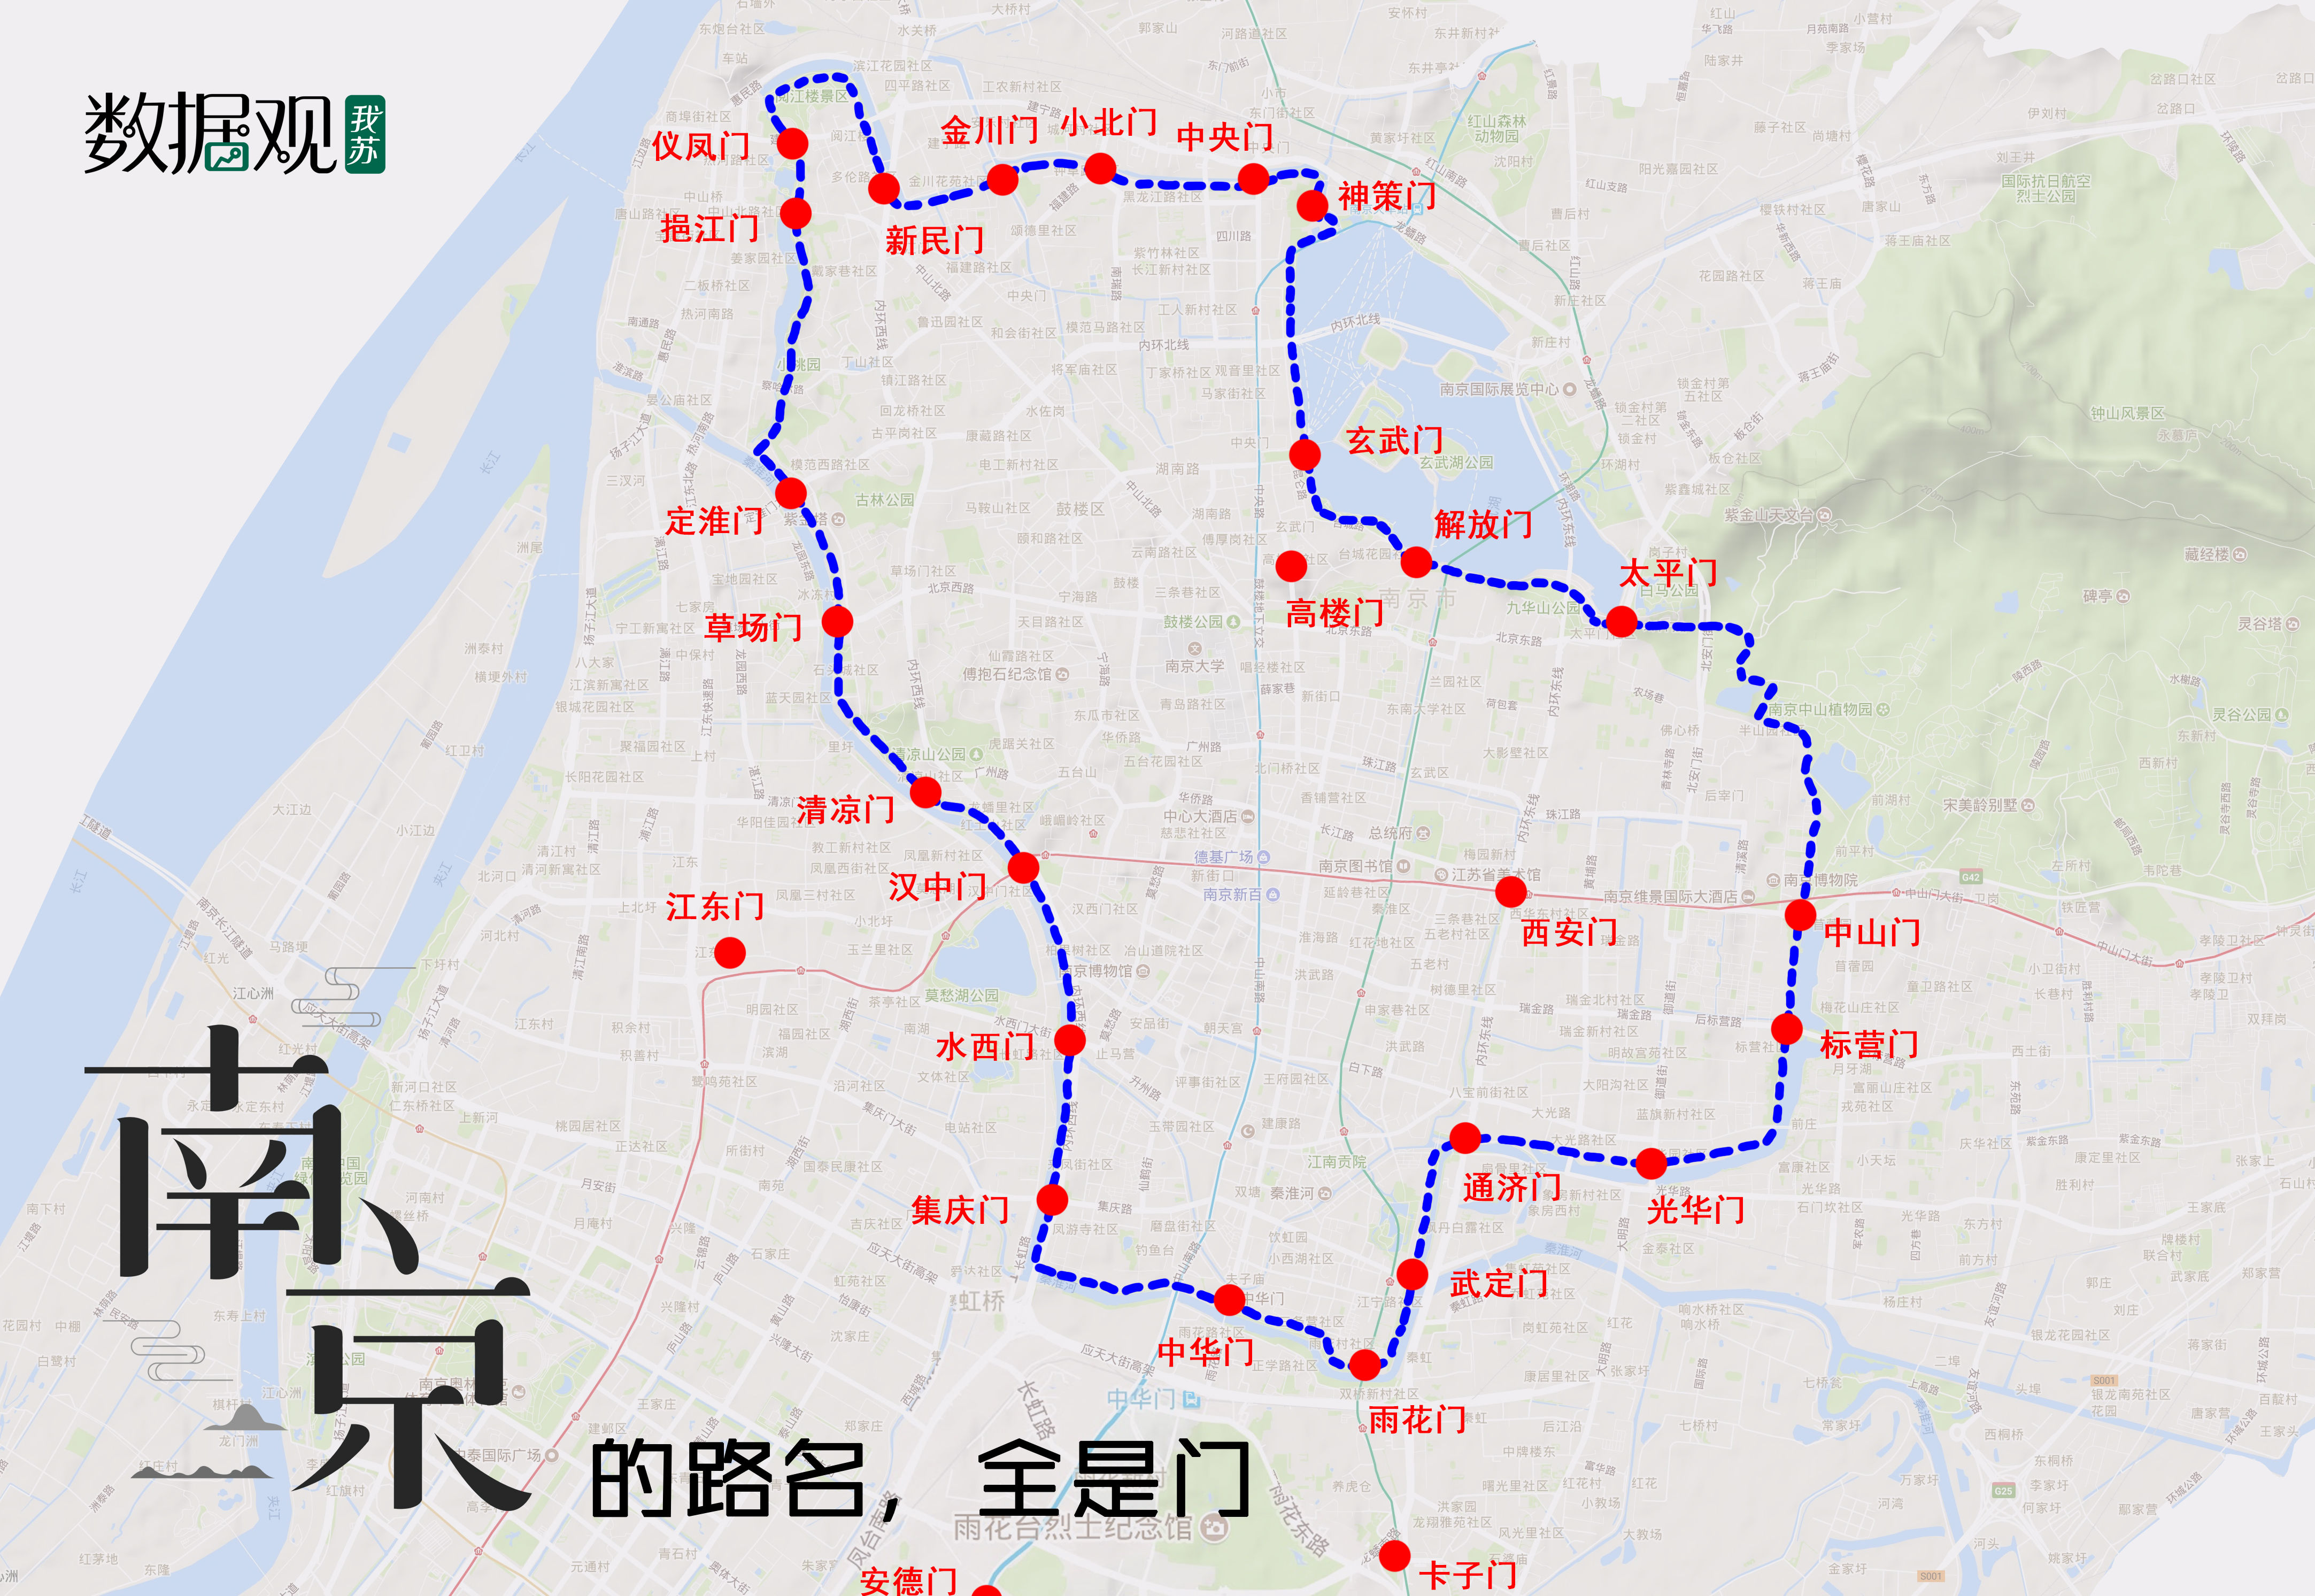 我苏数据观抓取了百度地图上南京地界的2090条道路,经过整理得到2422